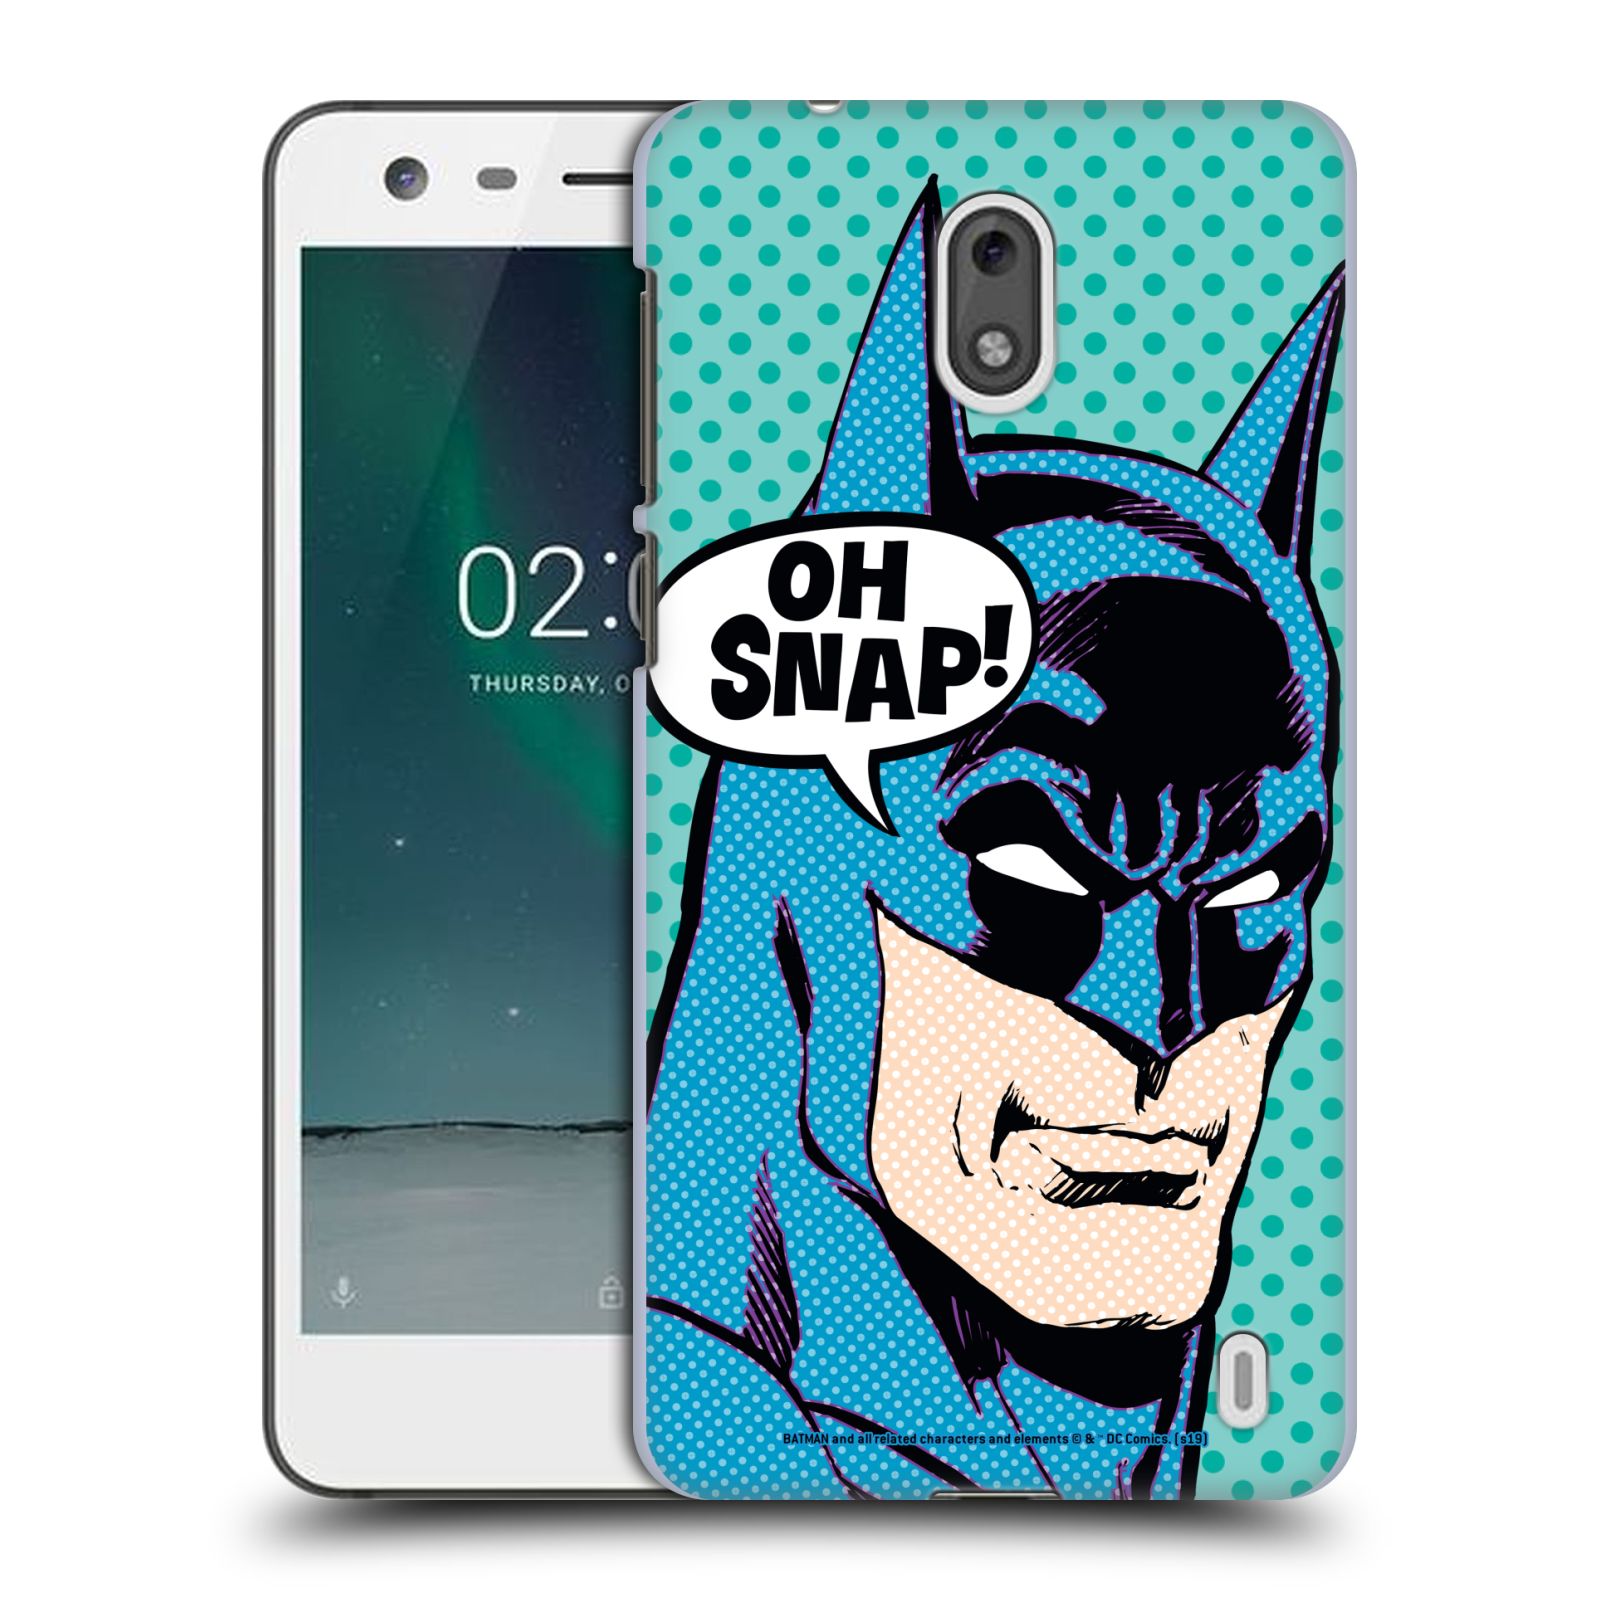 Pouzdro na mobil Nokia 2 - HEAD CASE - DC komix Batman Pop Art tvář